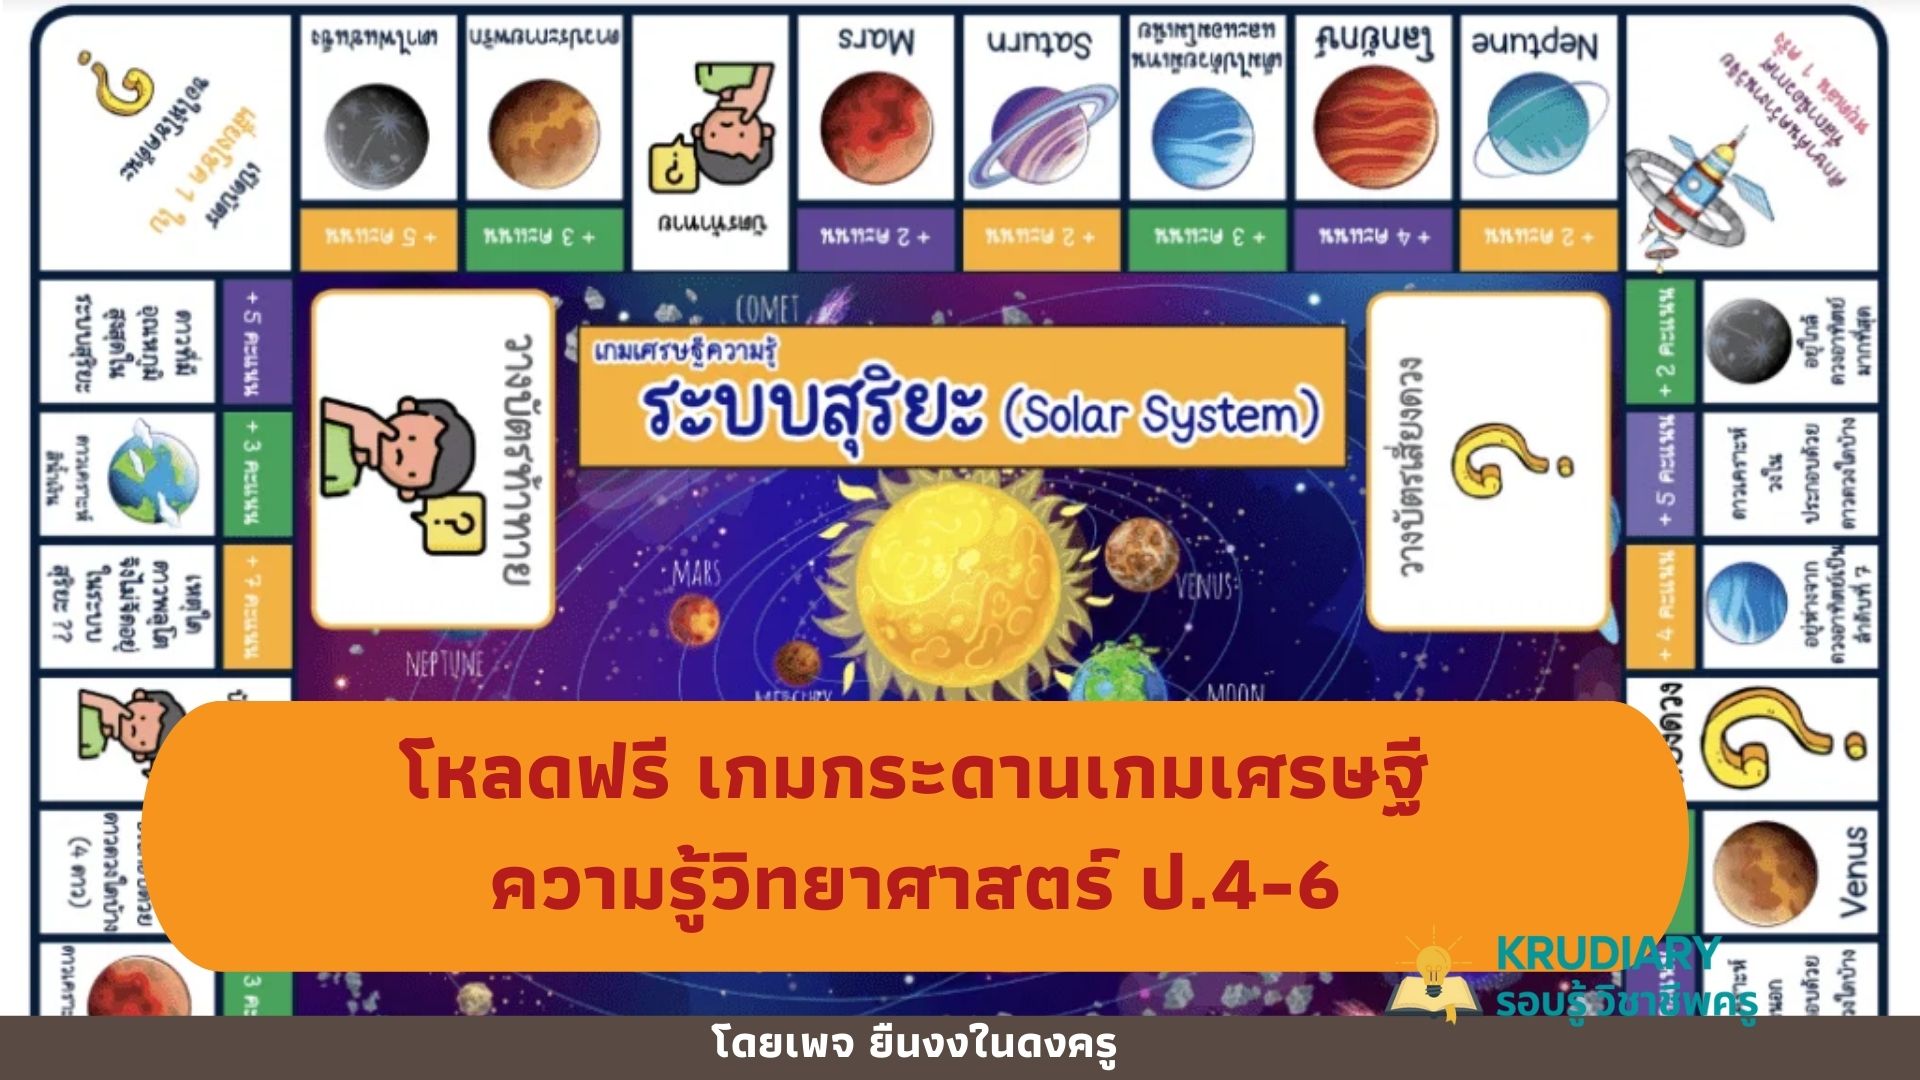 โหลดฟรี เกมกระดานเกมเศรษฐีความรู้วิทยาศาสตร์ ป.4-6 จำนวน 6 เรื่อง 6 กระดาน โดยเพจ ยืนงงในดงครู